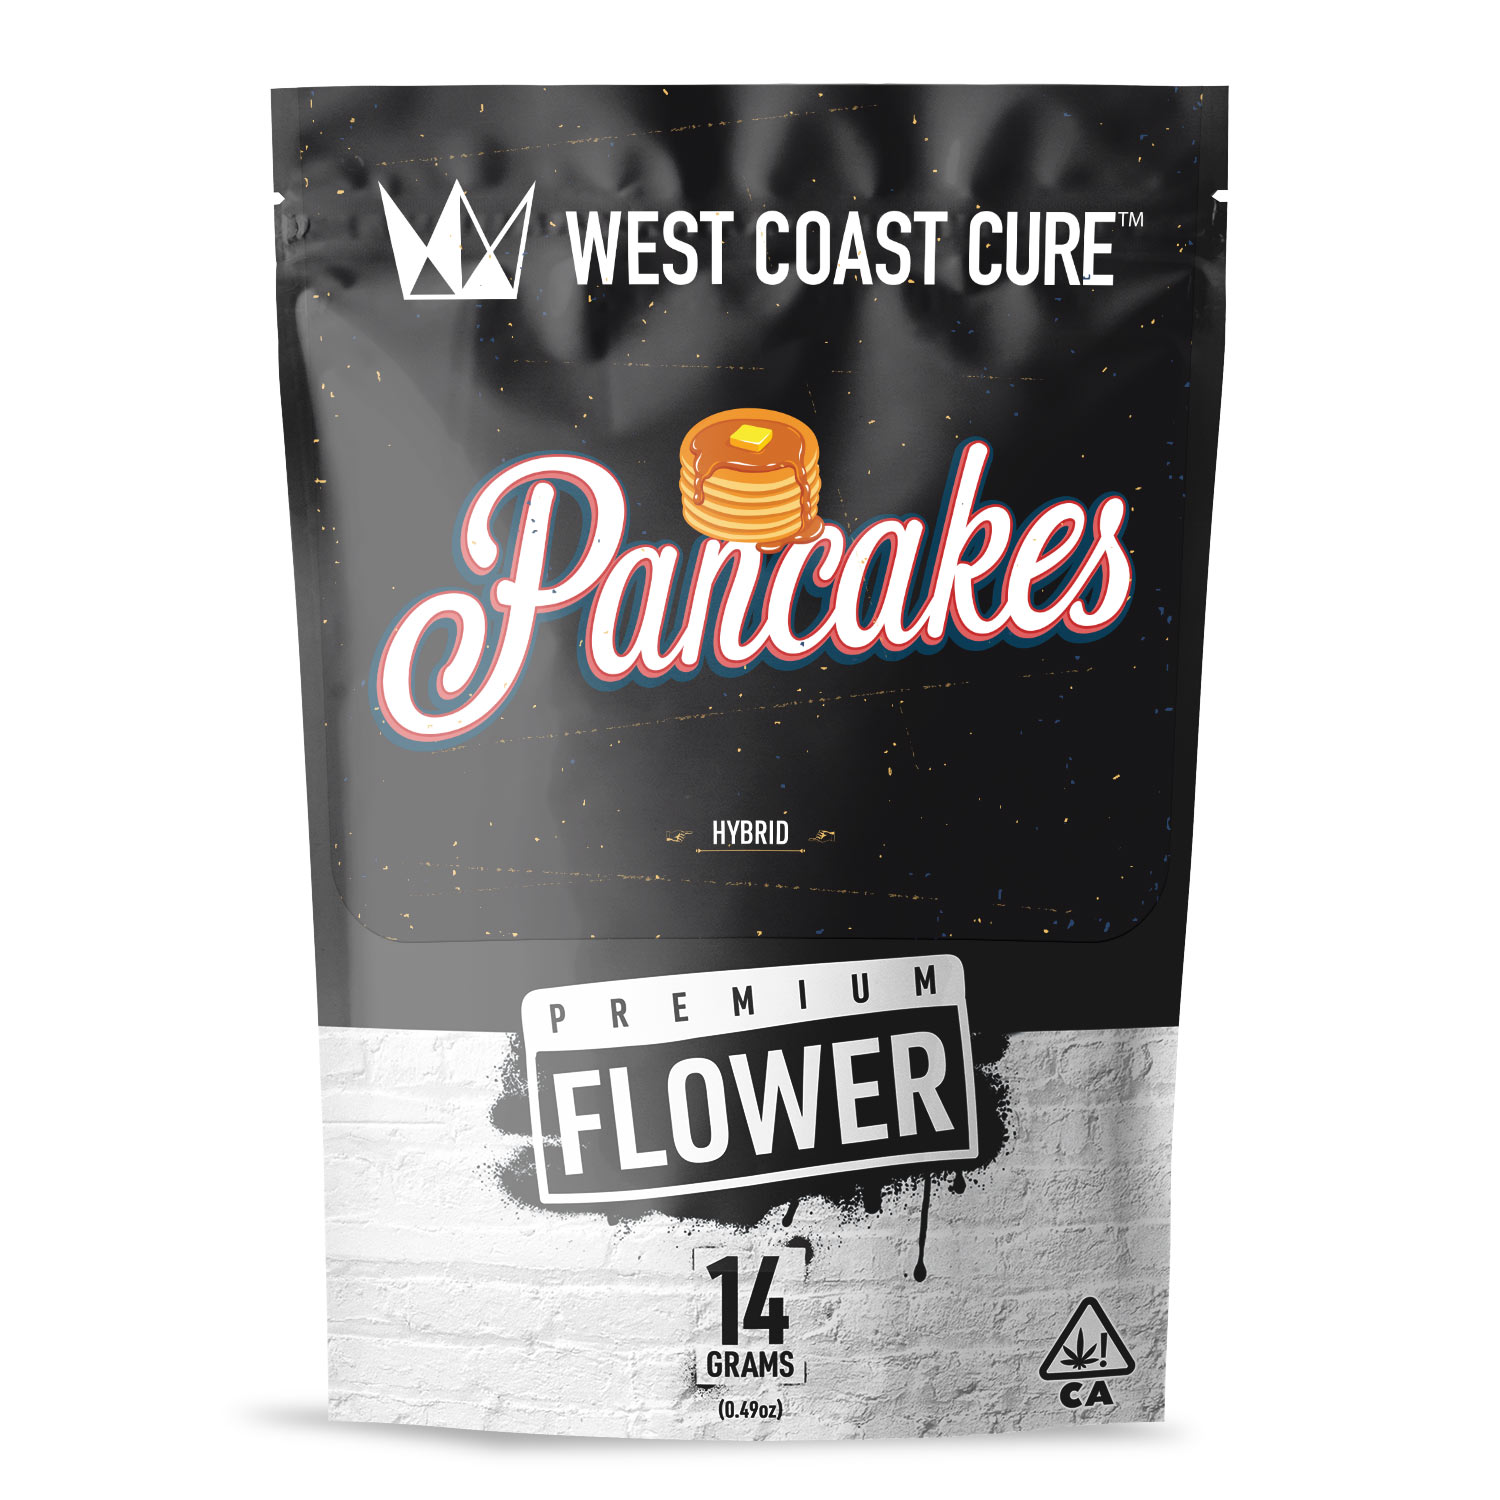 Pancakes Premium Flower